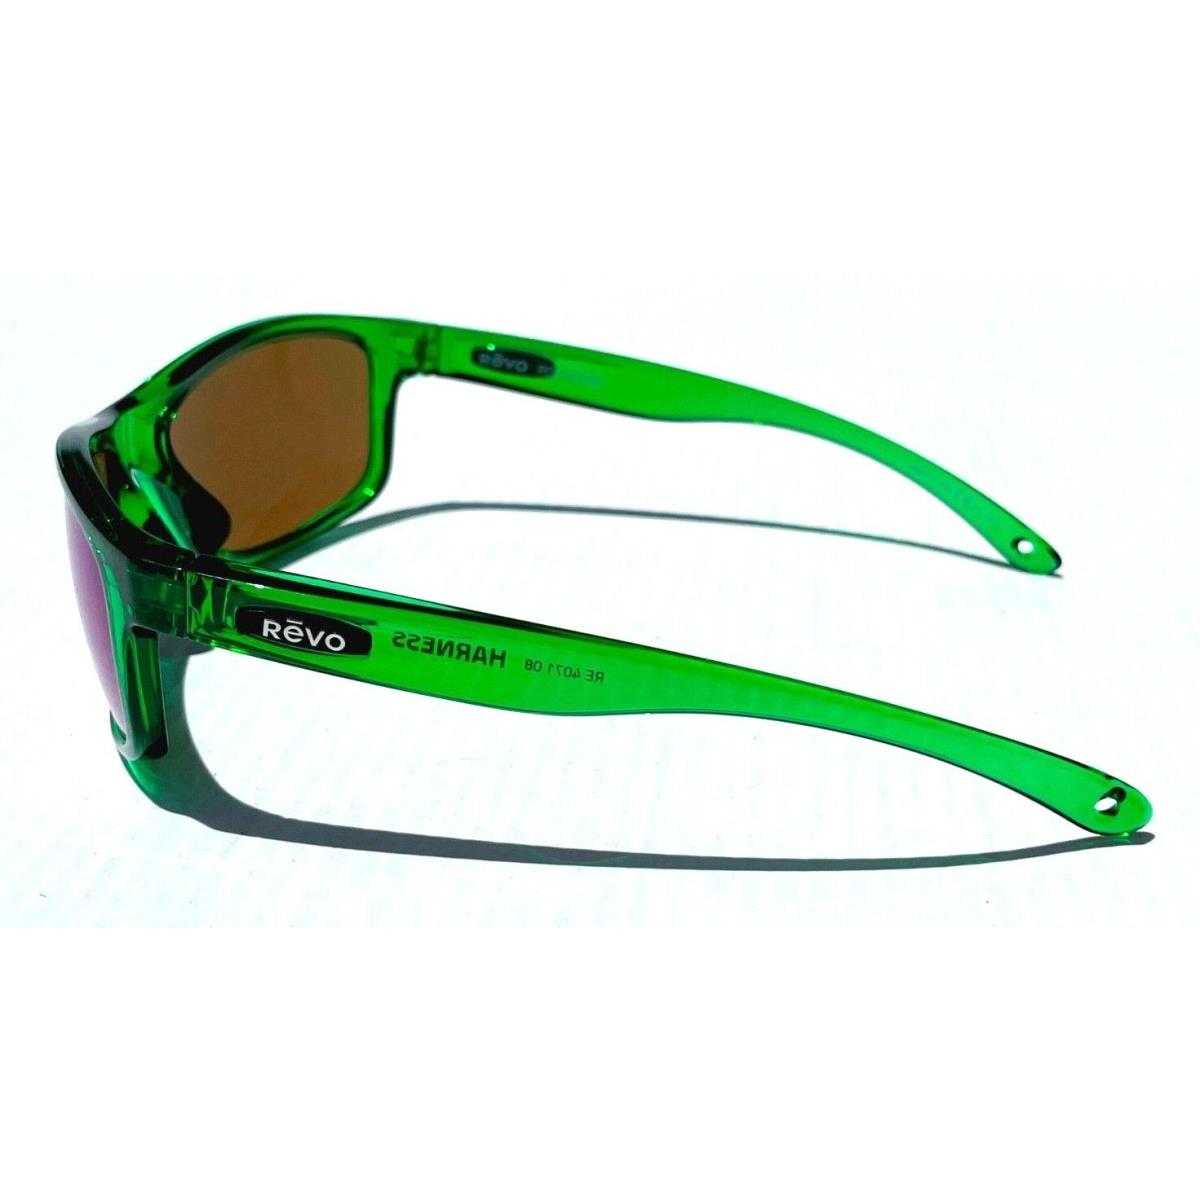 Revo sunglasses Harness - Green Frame, Green Lens 9